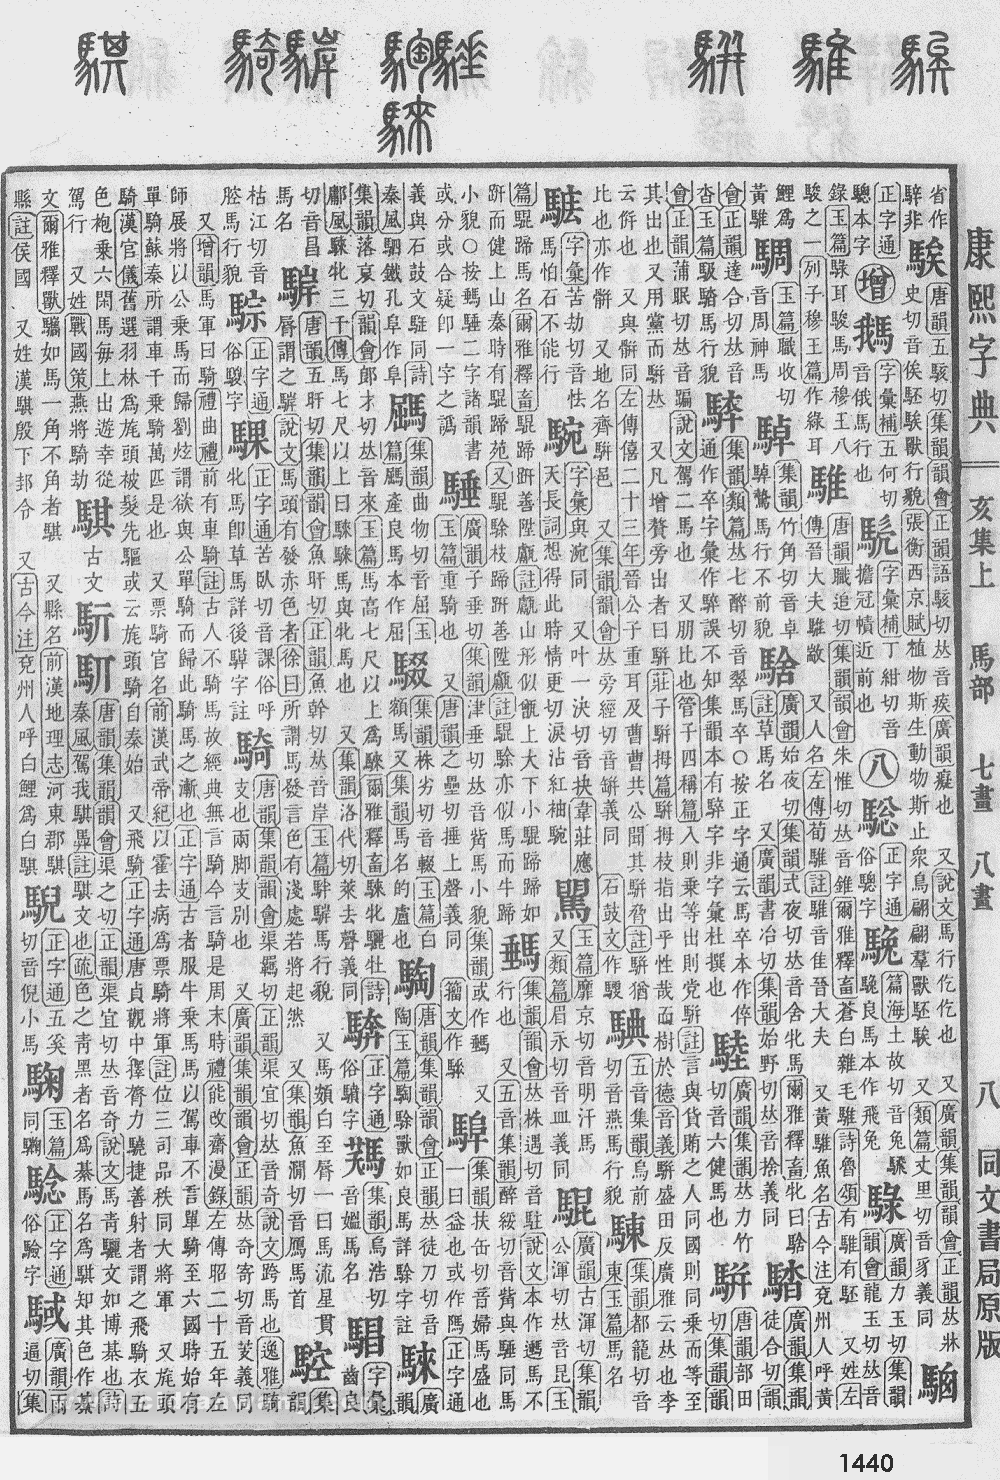 康熙字典掃描版第1440頁